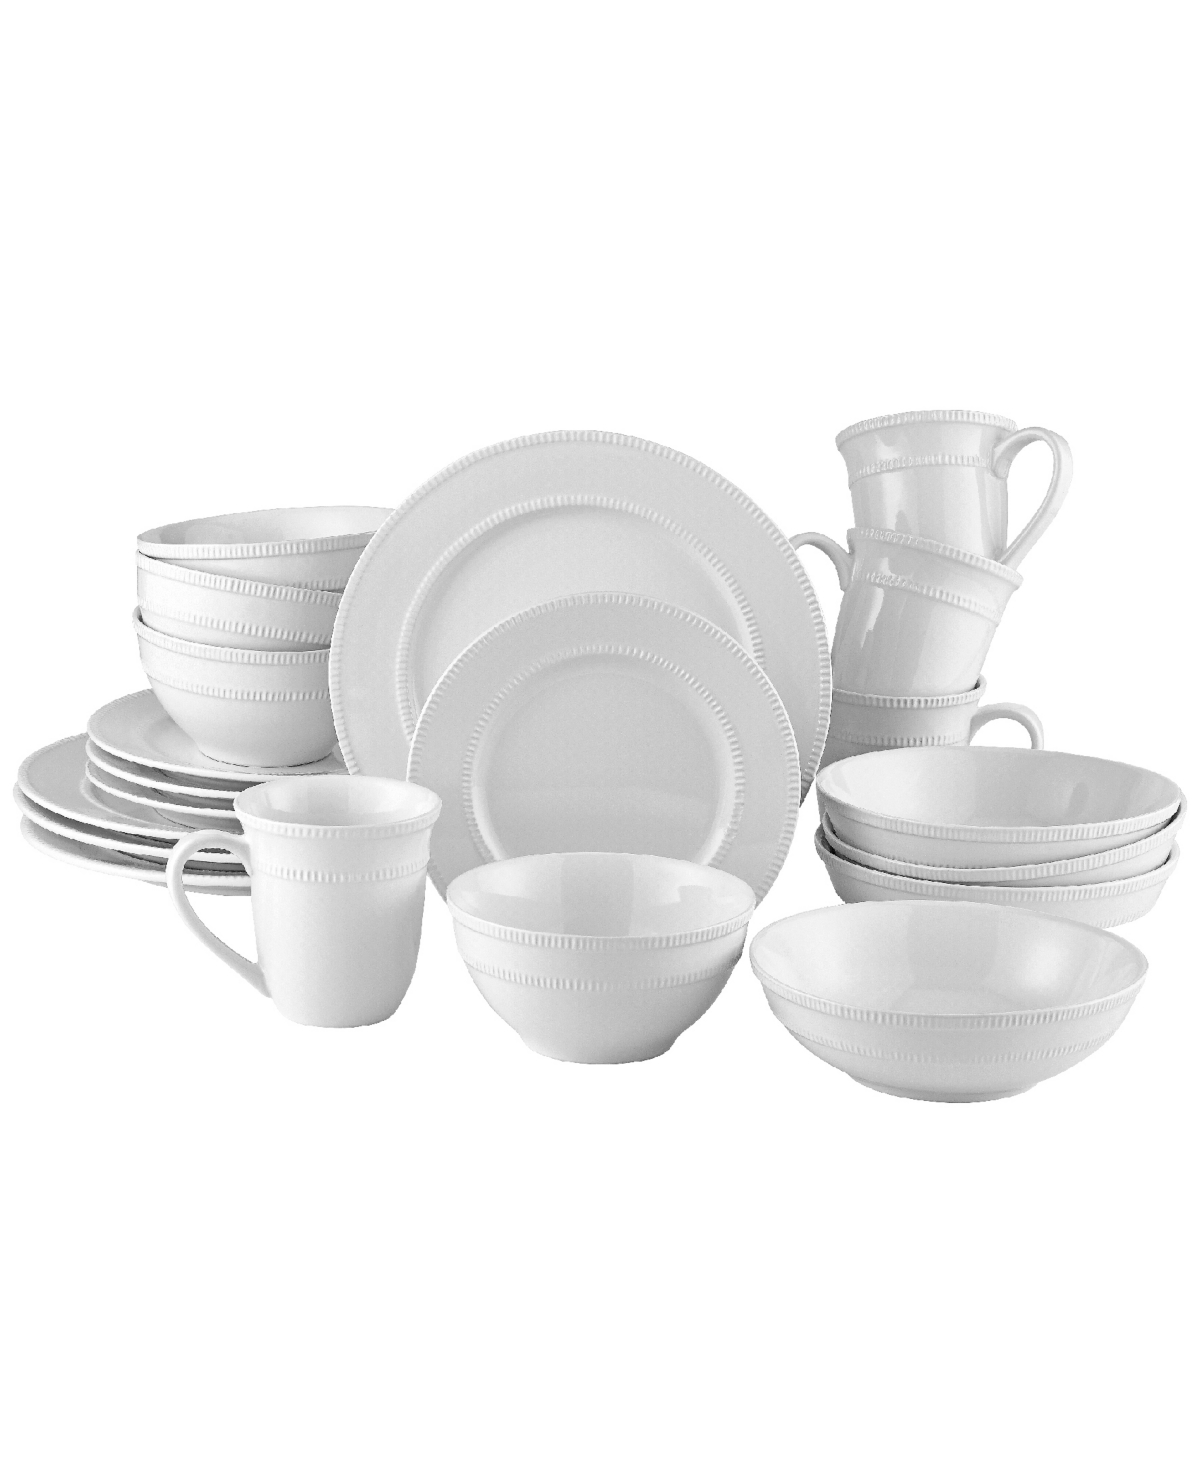 Highline 20Pc Dinnerware Set - White